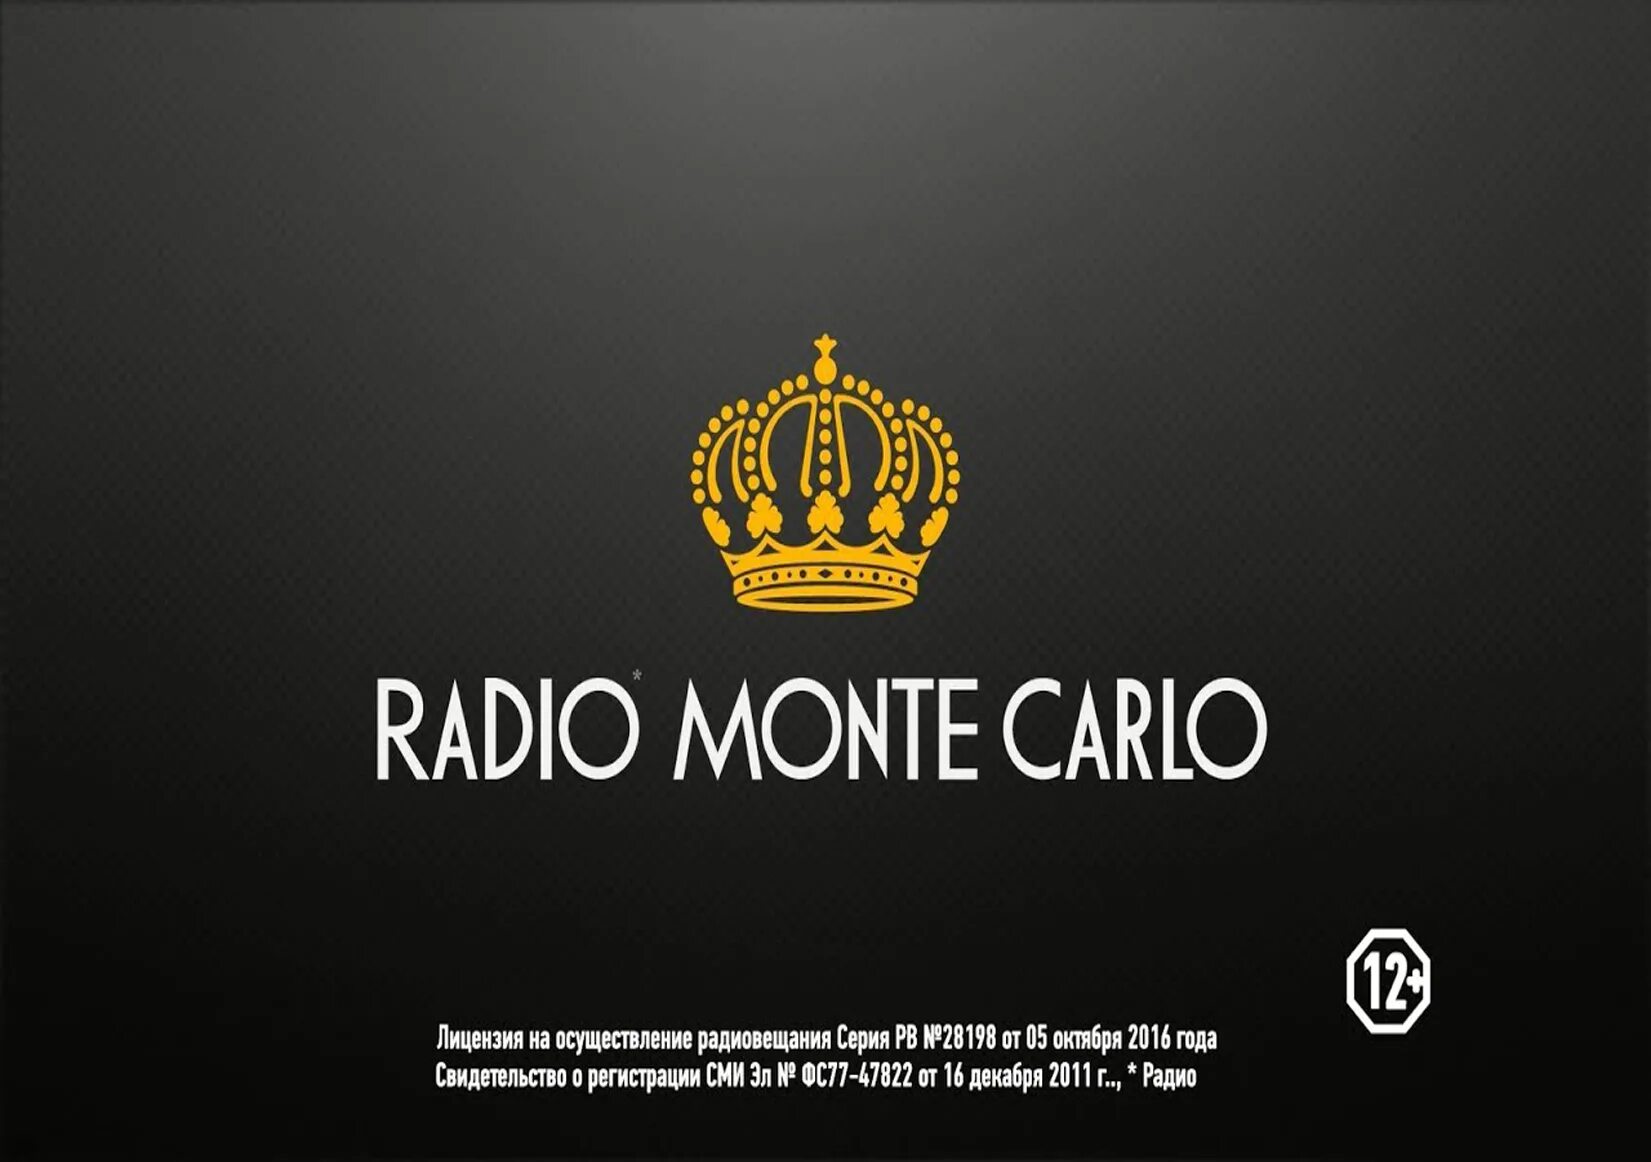 Радио Монте. Радио радио Монте-Карло. Радио Монте Карло фото. Радио Monte Carlo логотип.